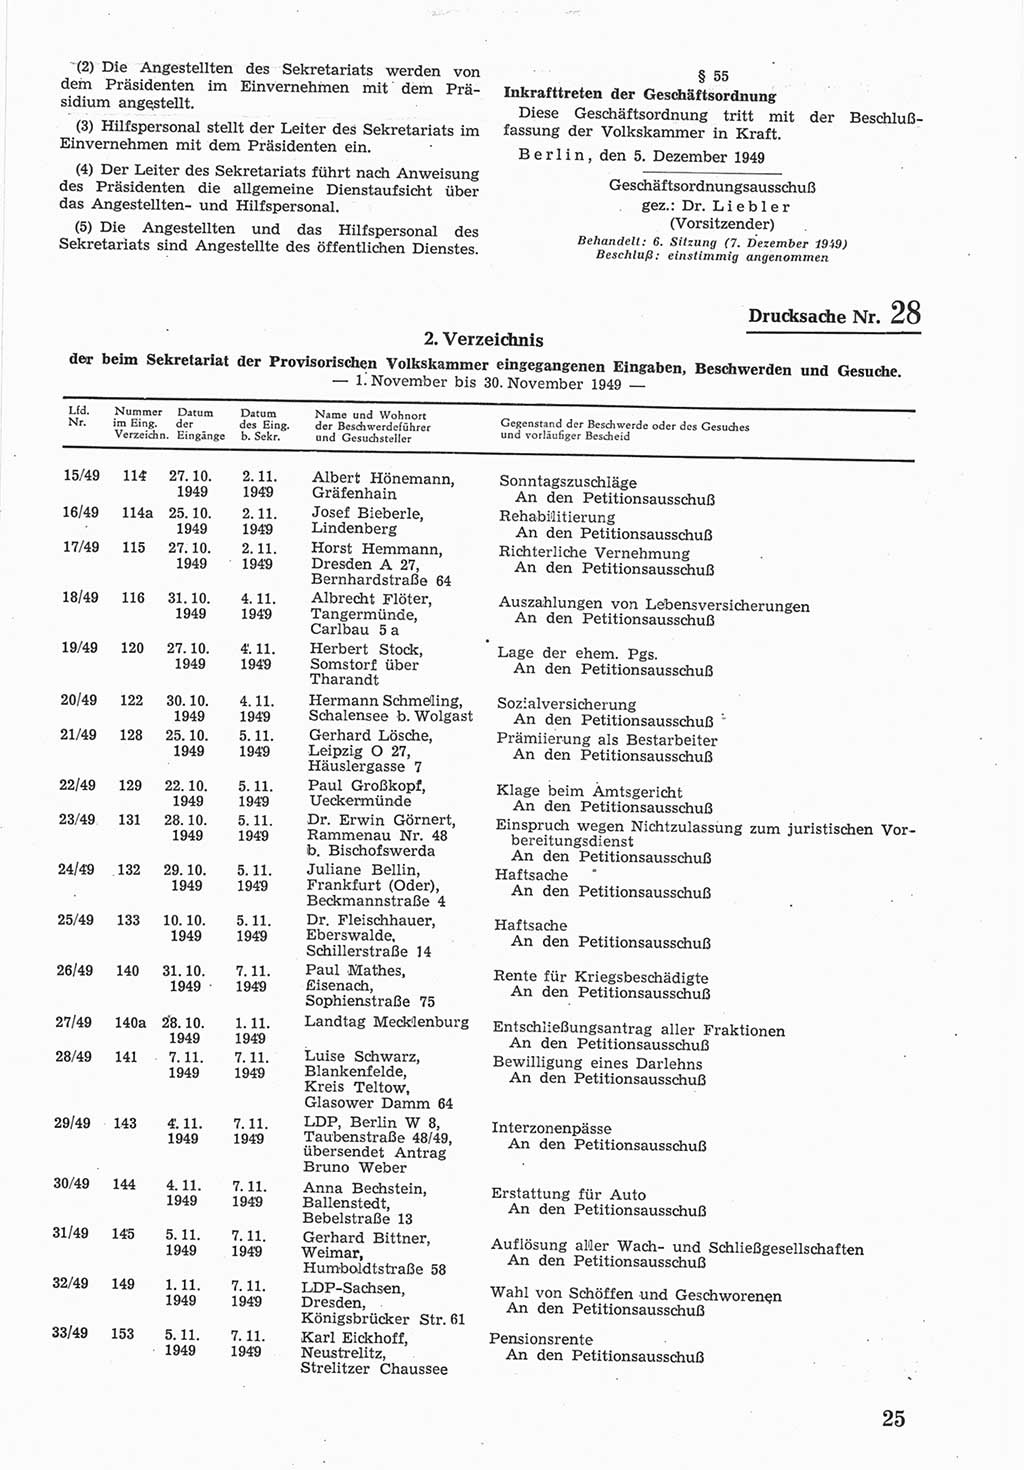 Provisorische Volkskammer (VK) der Deutschen Demokratischen Republik (DDR) 1949-1950, Dokument 593 (Prov. VK DDR 1949-1950, Dok. 593)